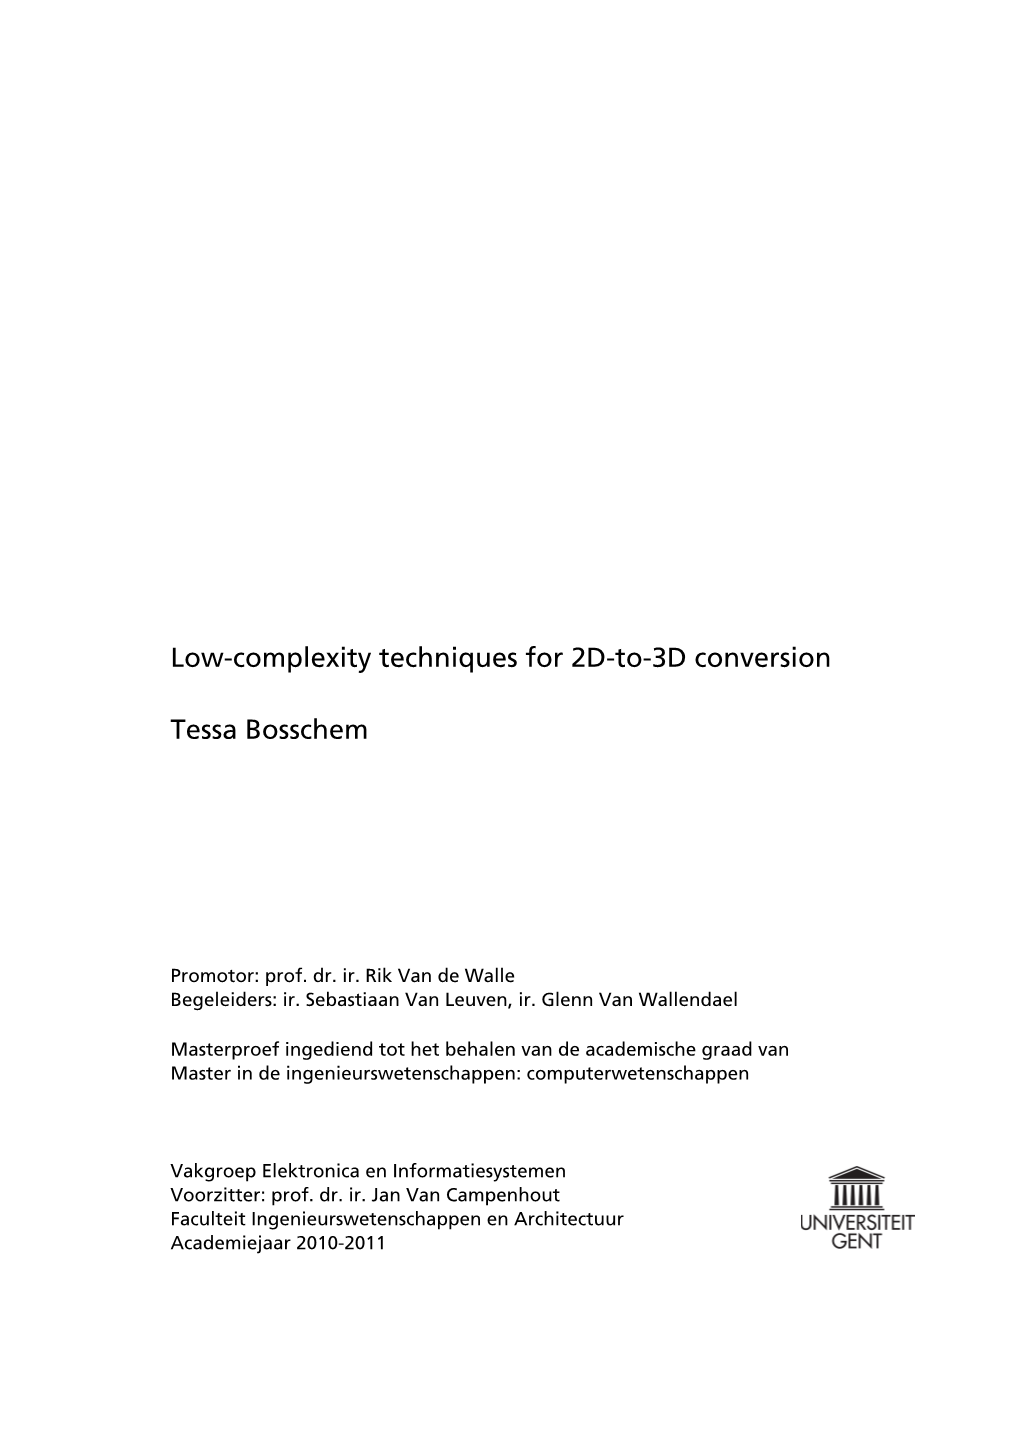 Tessa Bosschem Low-Complexity Techniques for 2D-To-3D Conversion